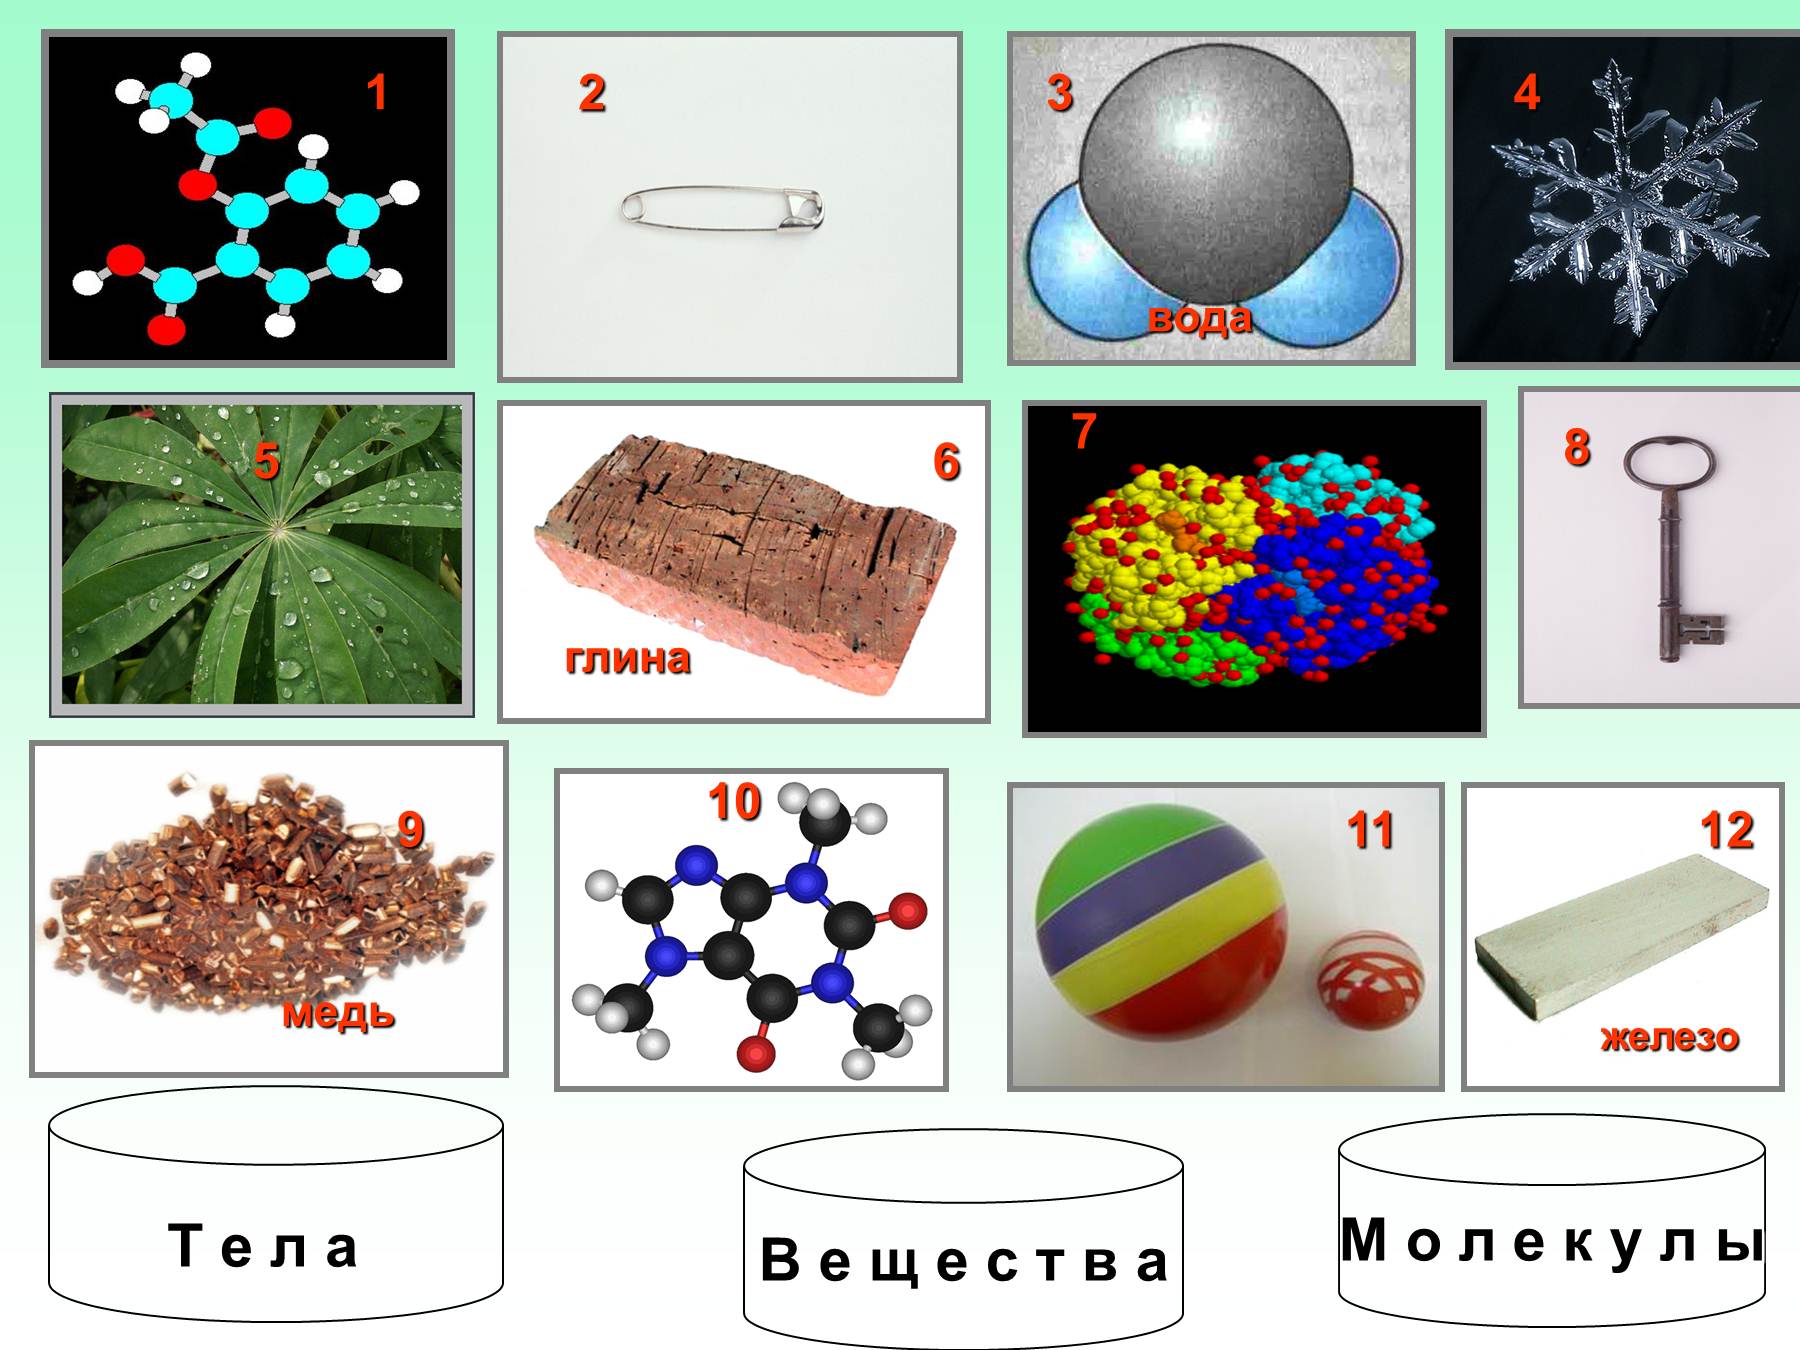 Вещества и их свойства в химии